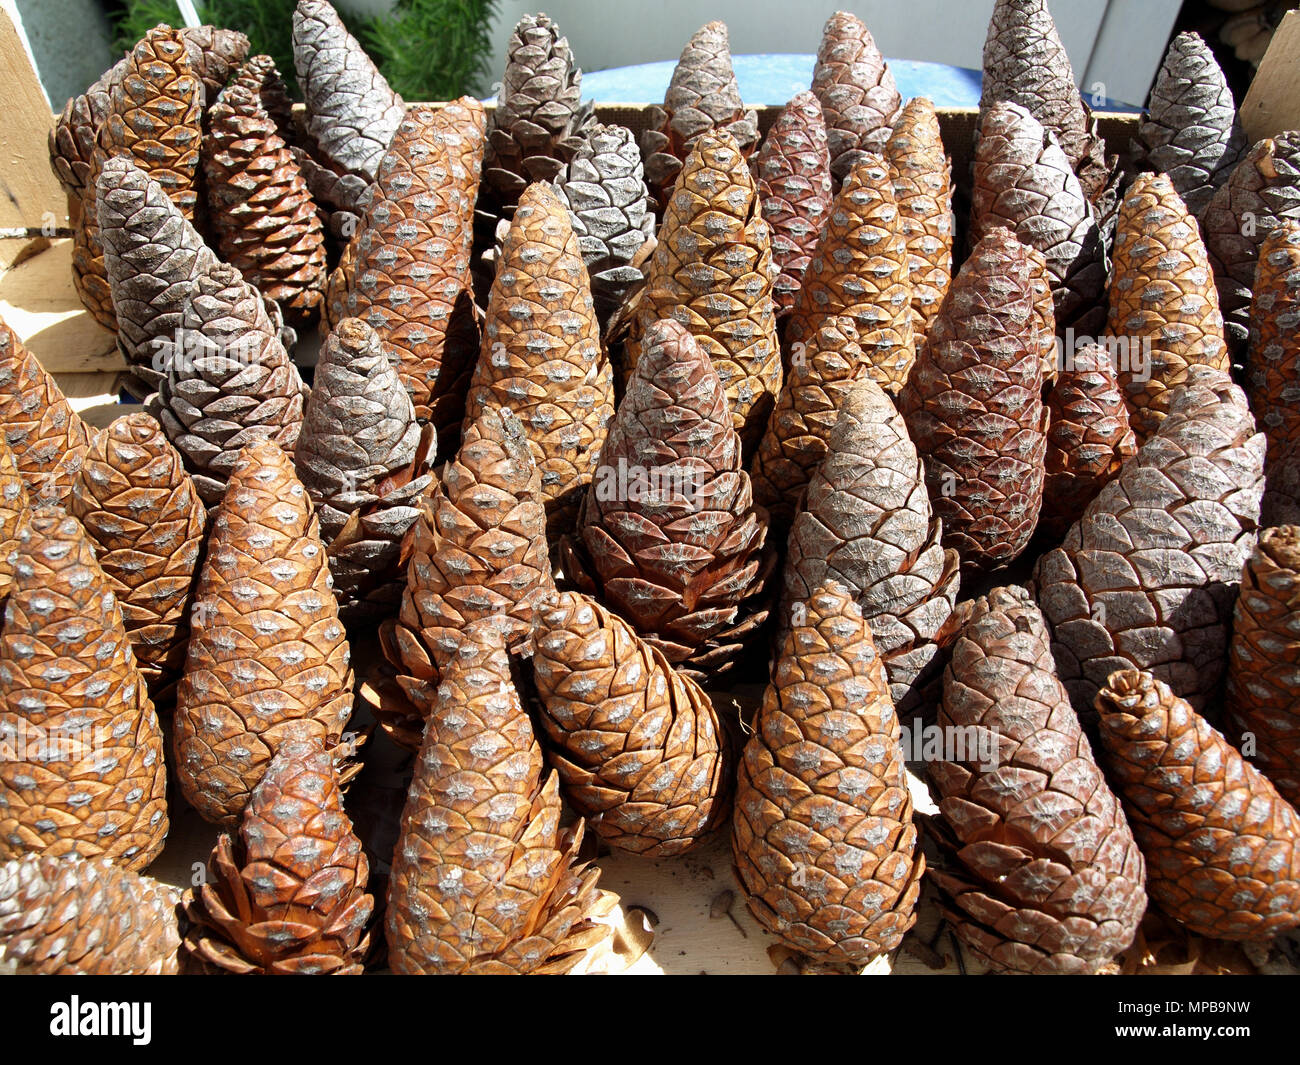 Tray of pine cones Stock Photo